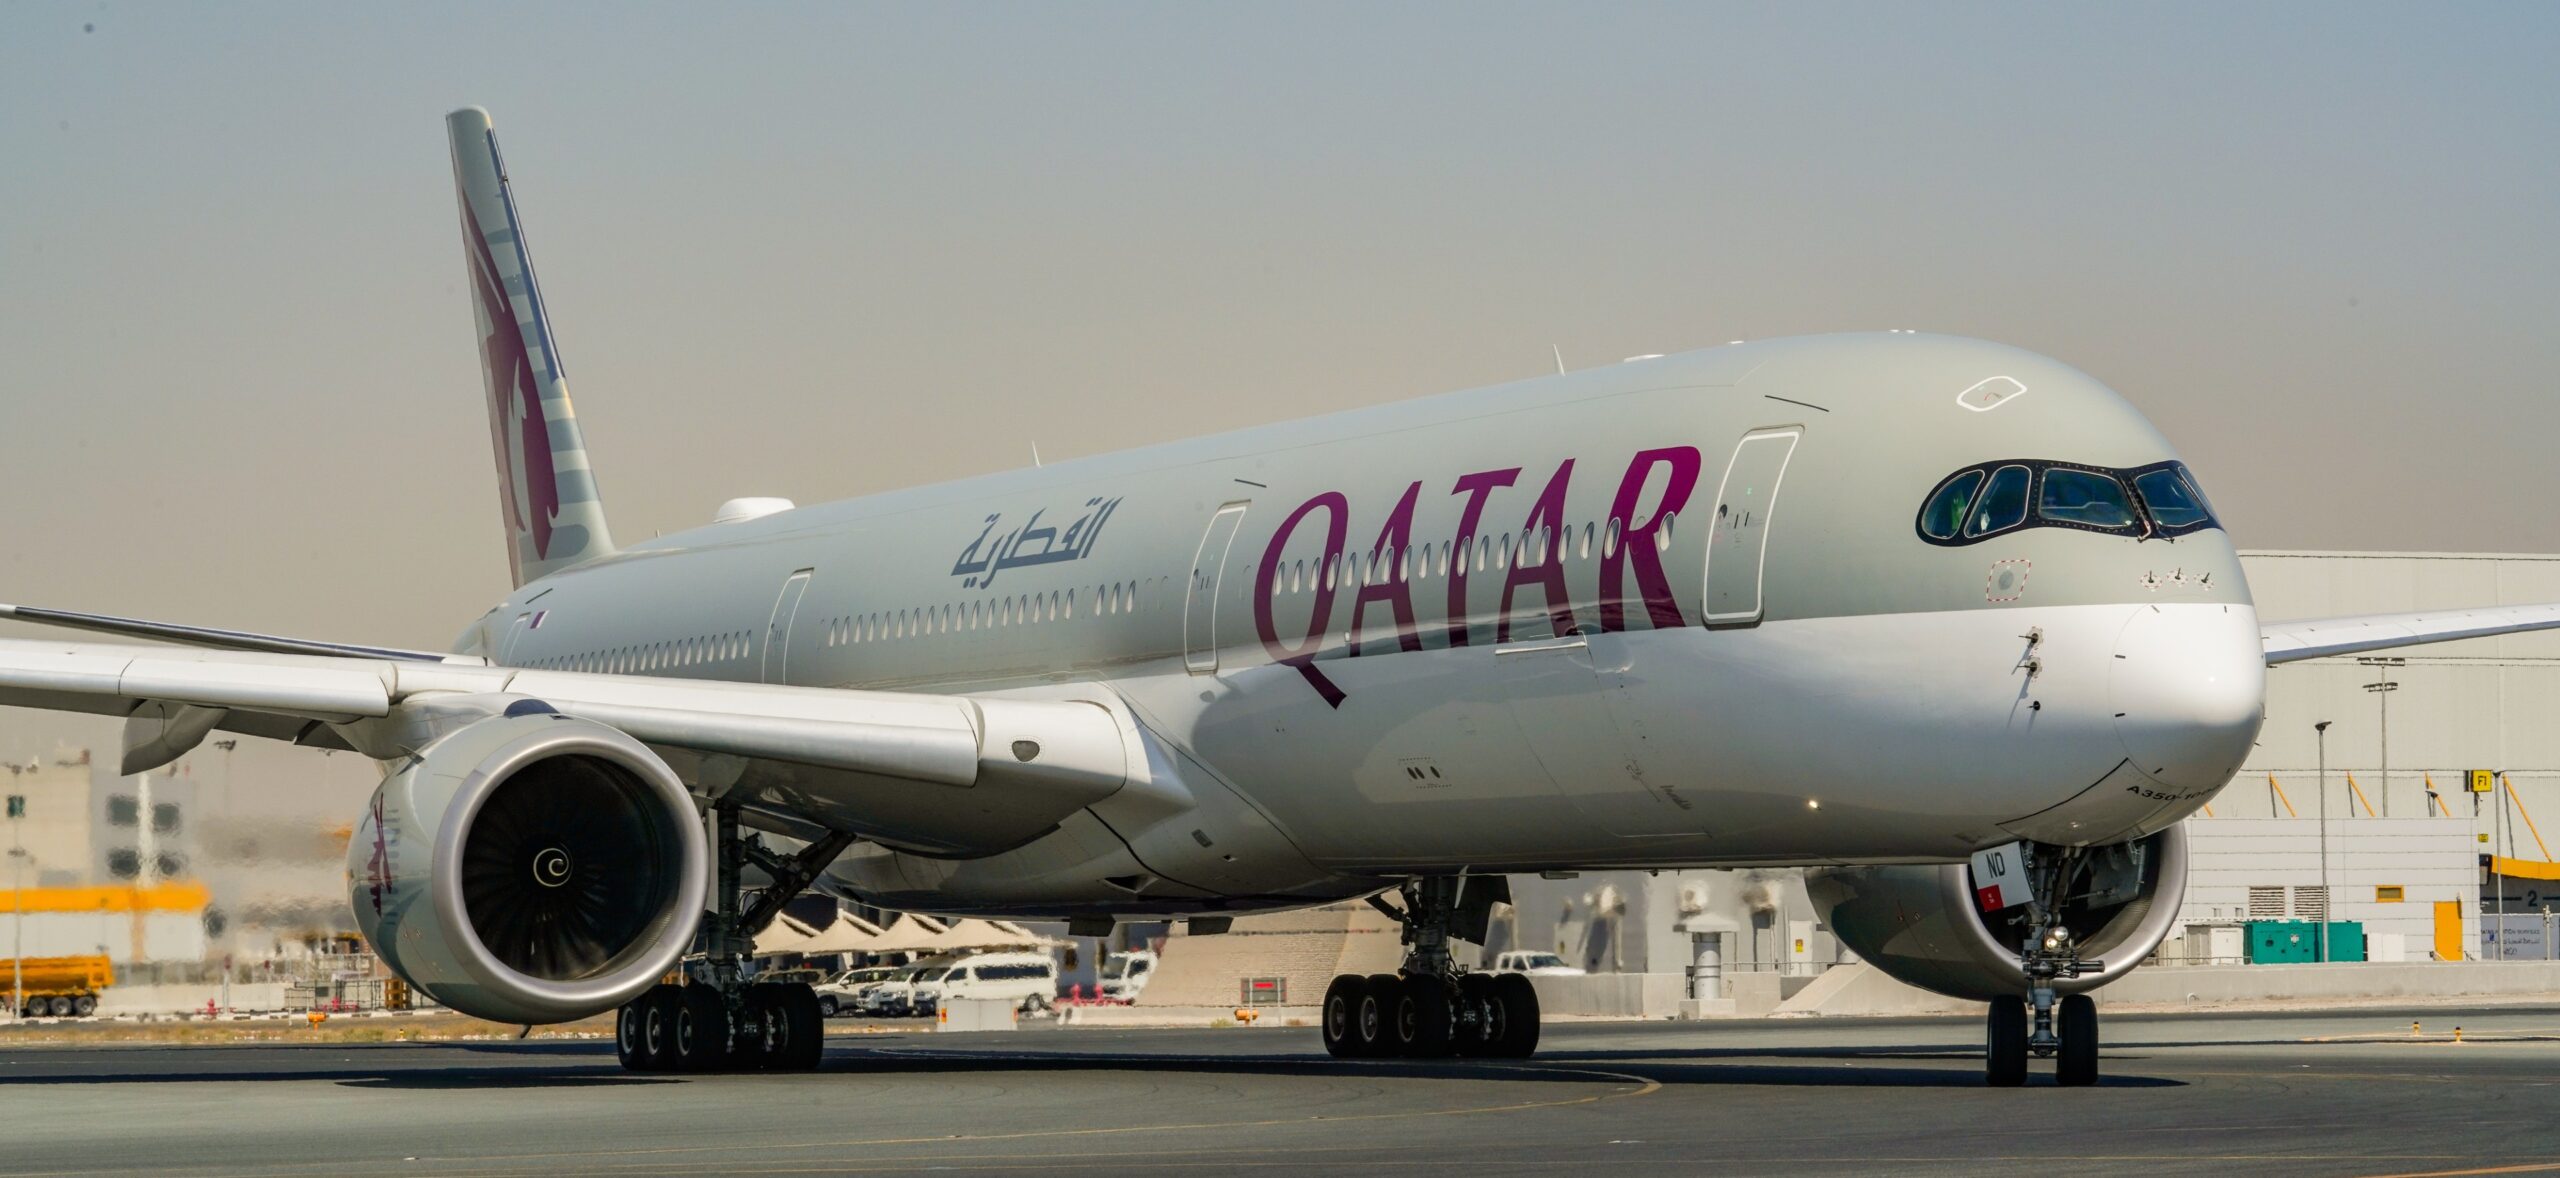 qatar airways zed travel